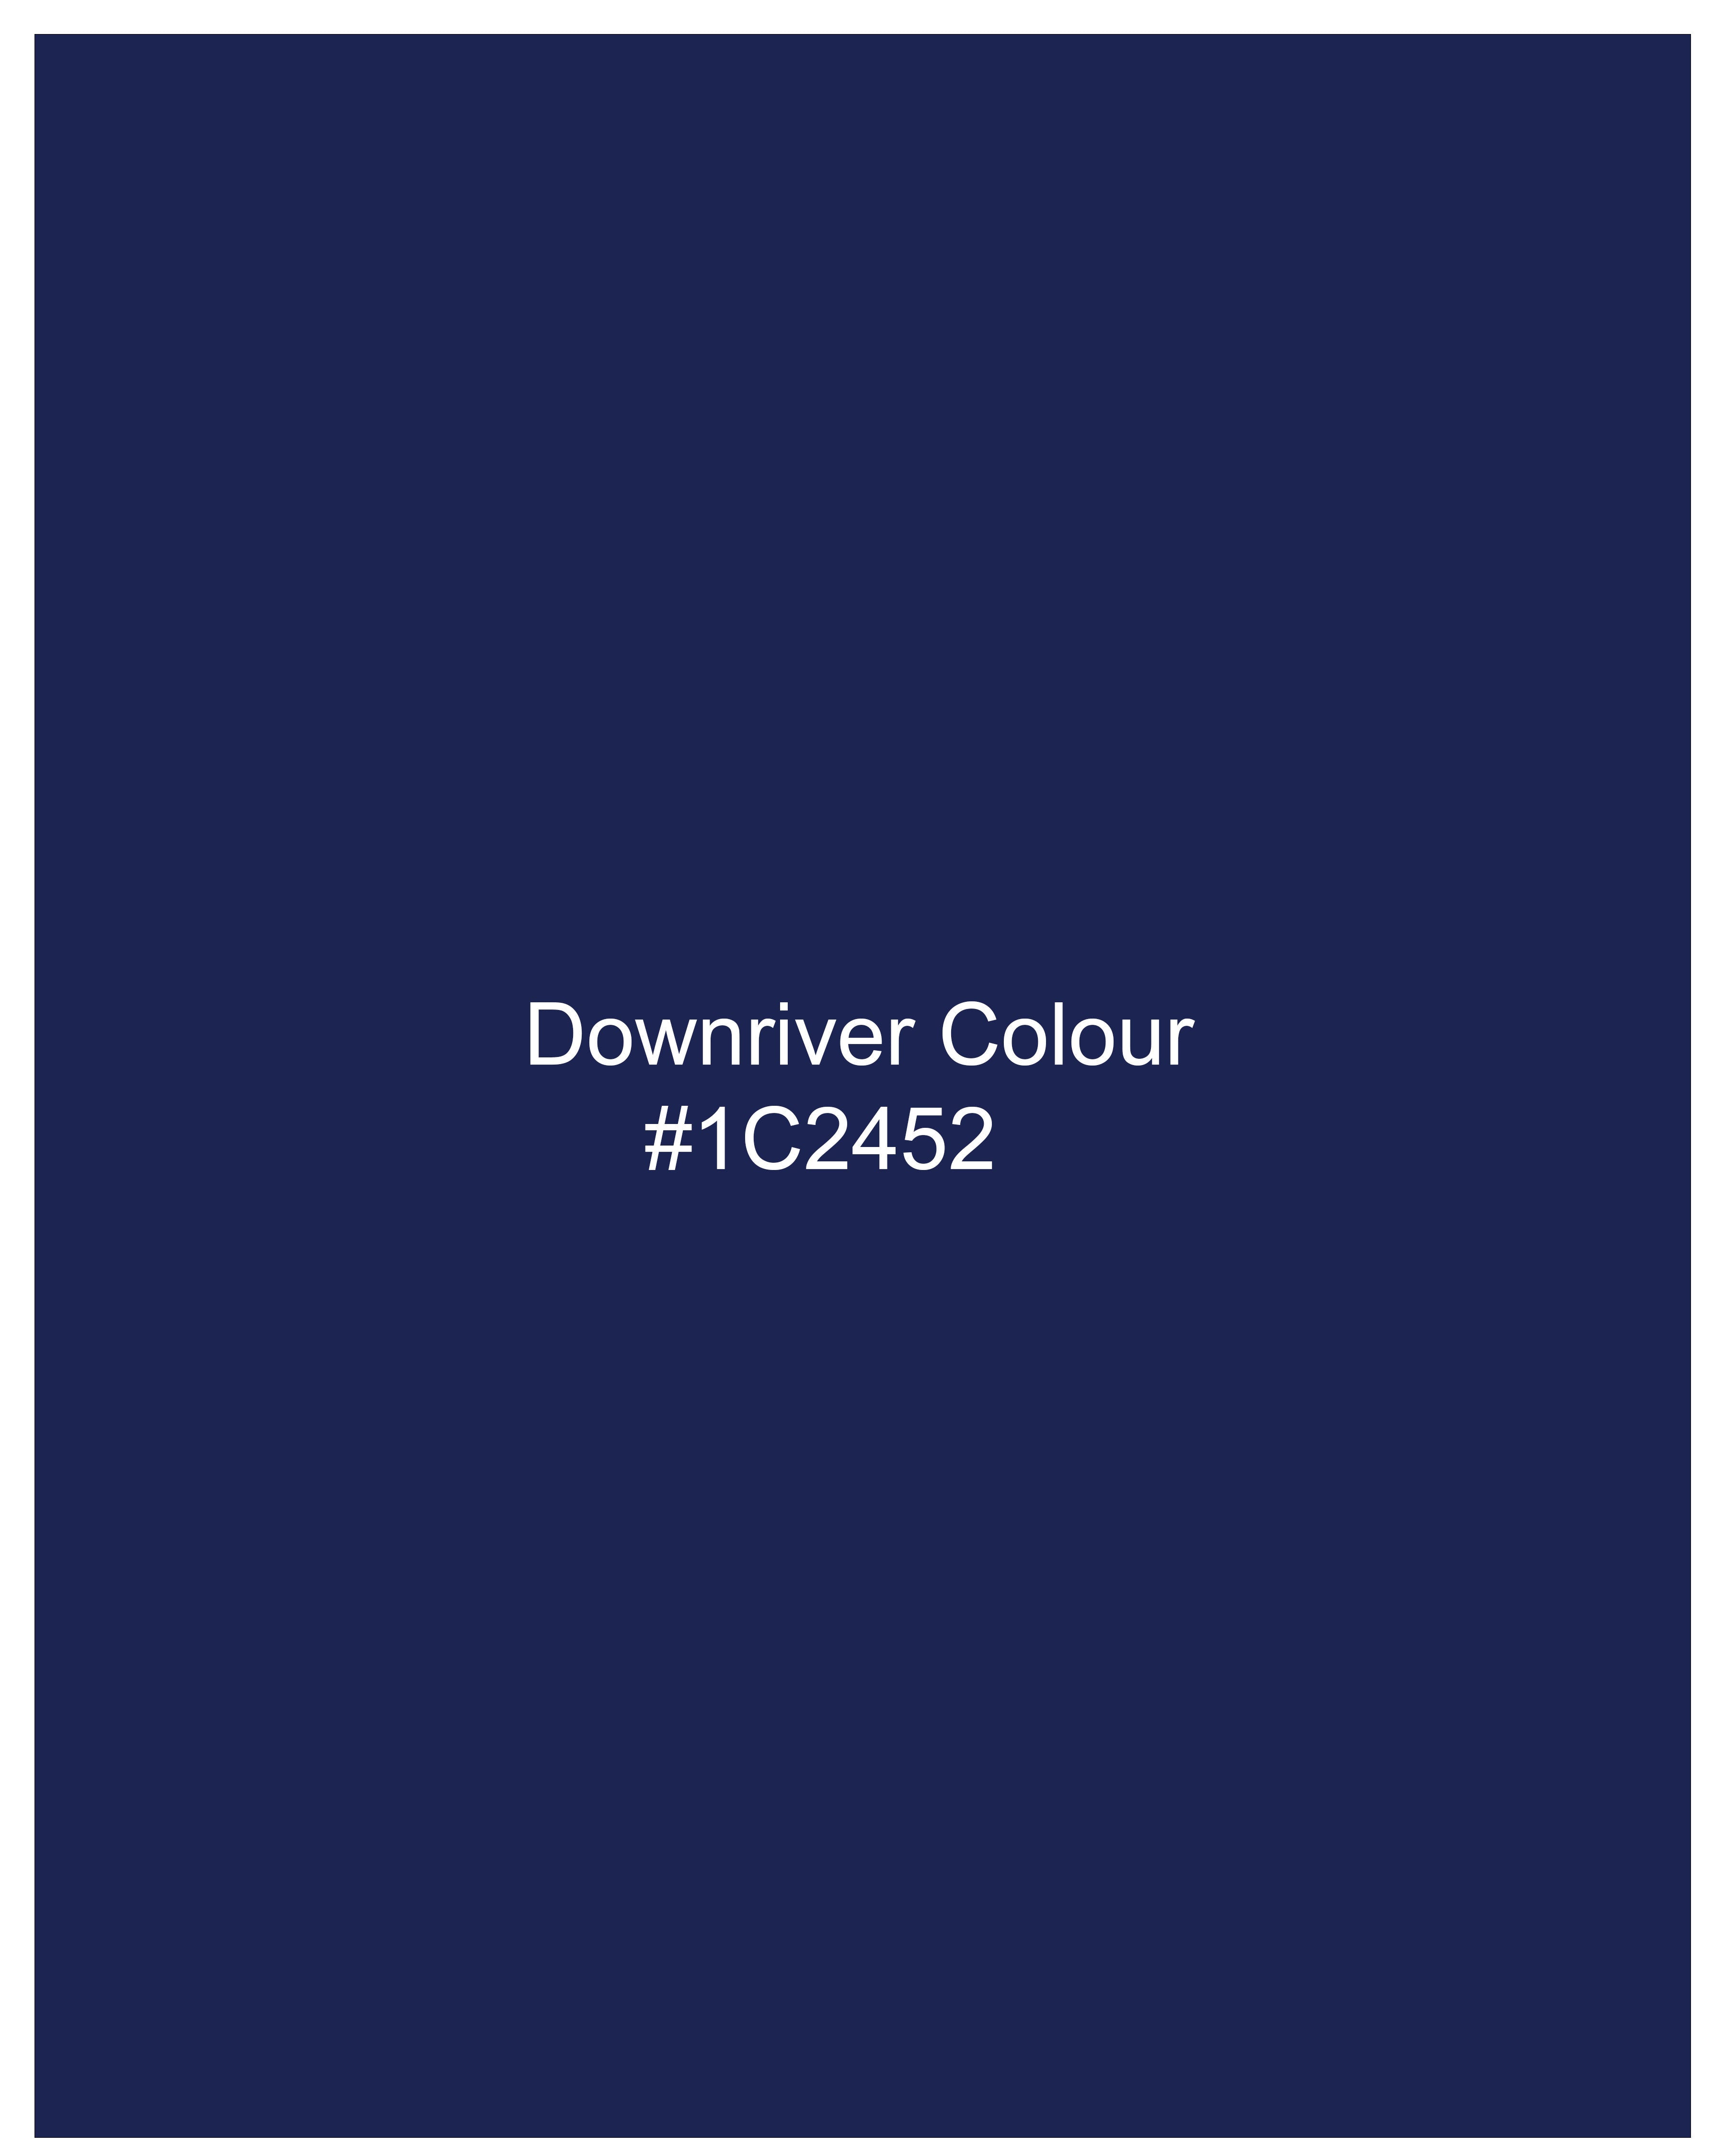 Downriver Navy Blue Velvet Designer Nehru Jacket ,WC2229-36, WC2229-38, WC2229-40, WC2229-42, WC2229-44, WC2229-46, WC2229-48, WC2229-50, WC2229-52, WC2229-54, WC2229-56, WC2229-58, WC2229-60